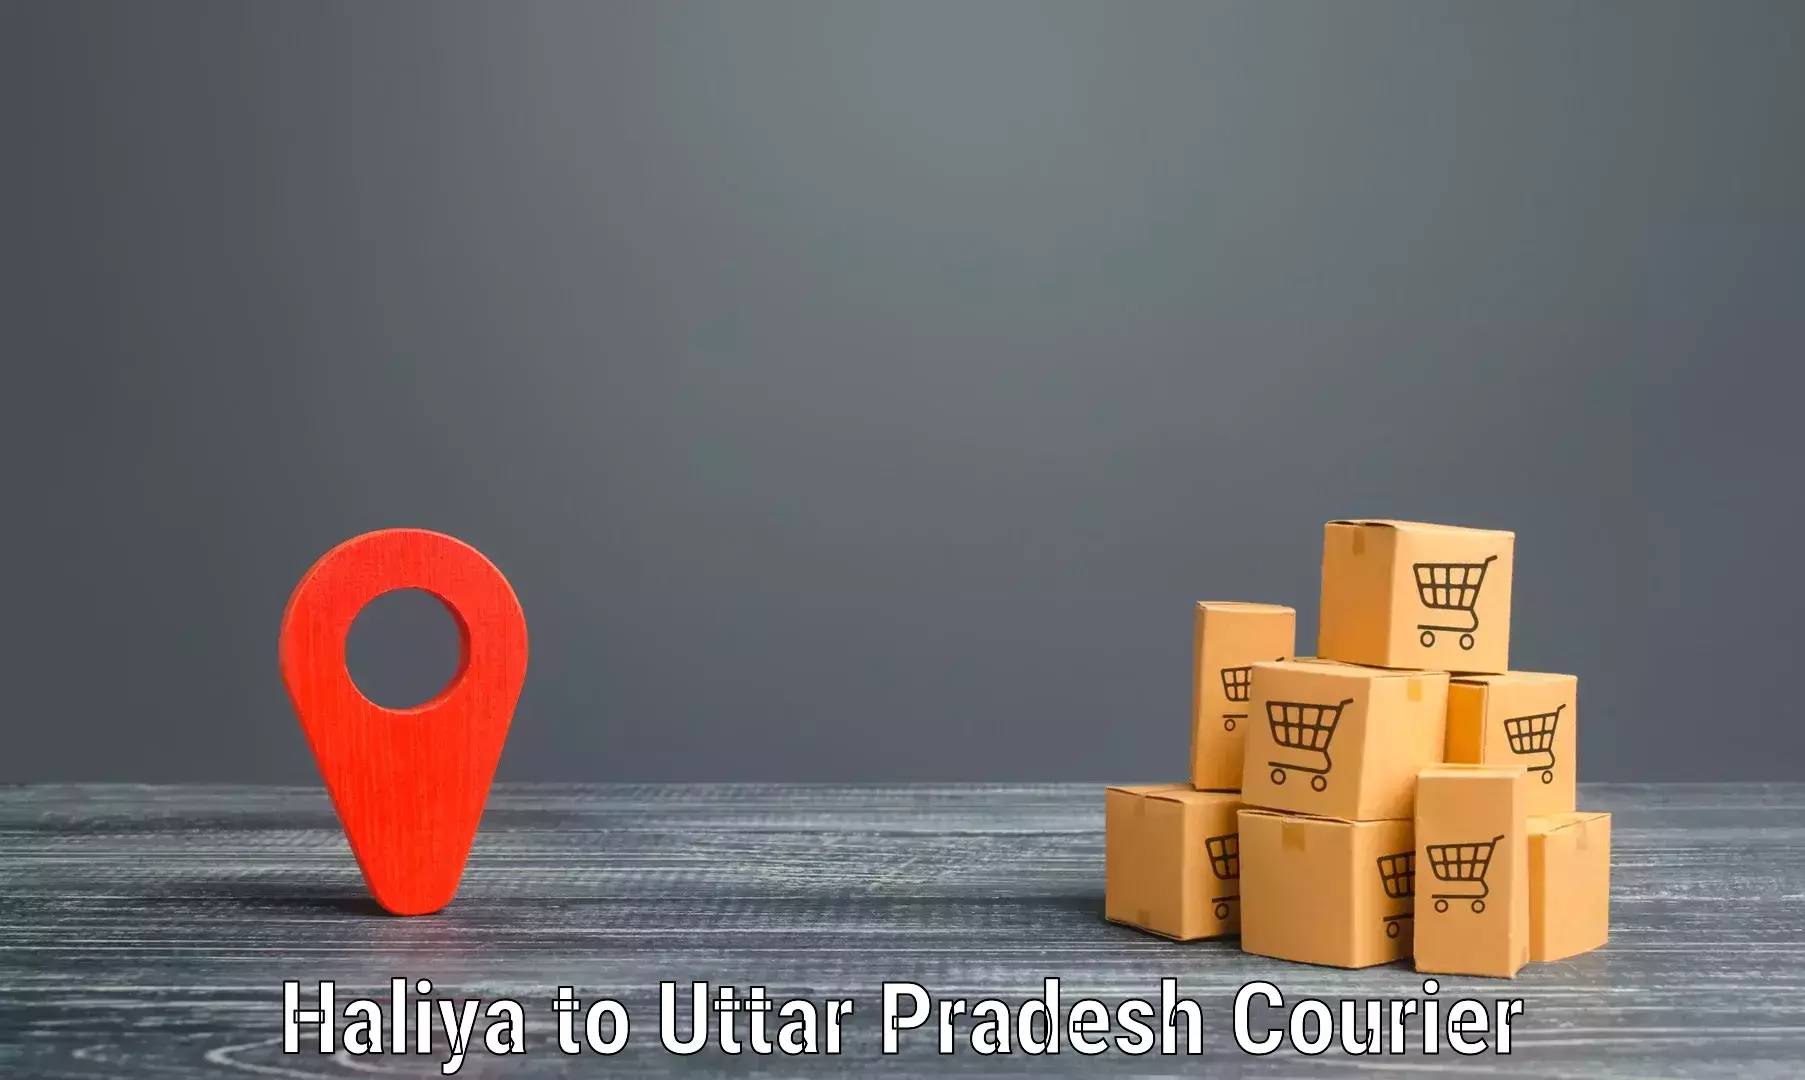 Global logistics network Haliya to Sewarhi